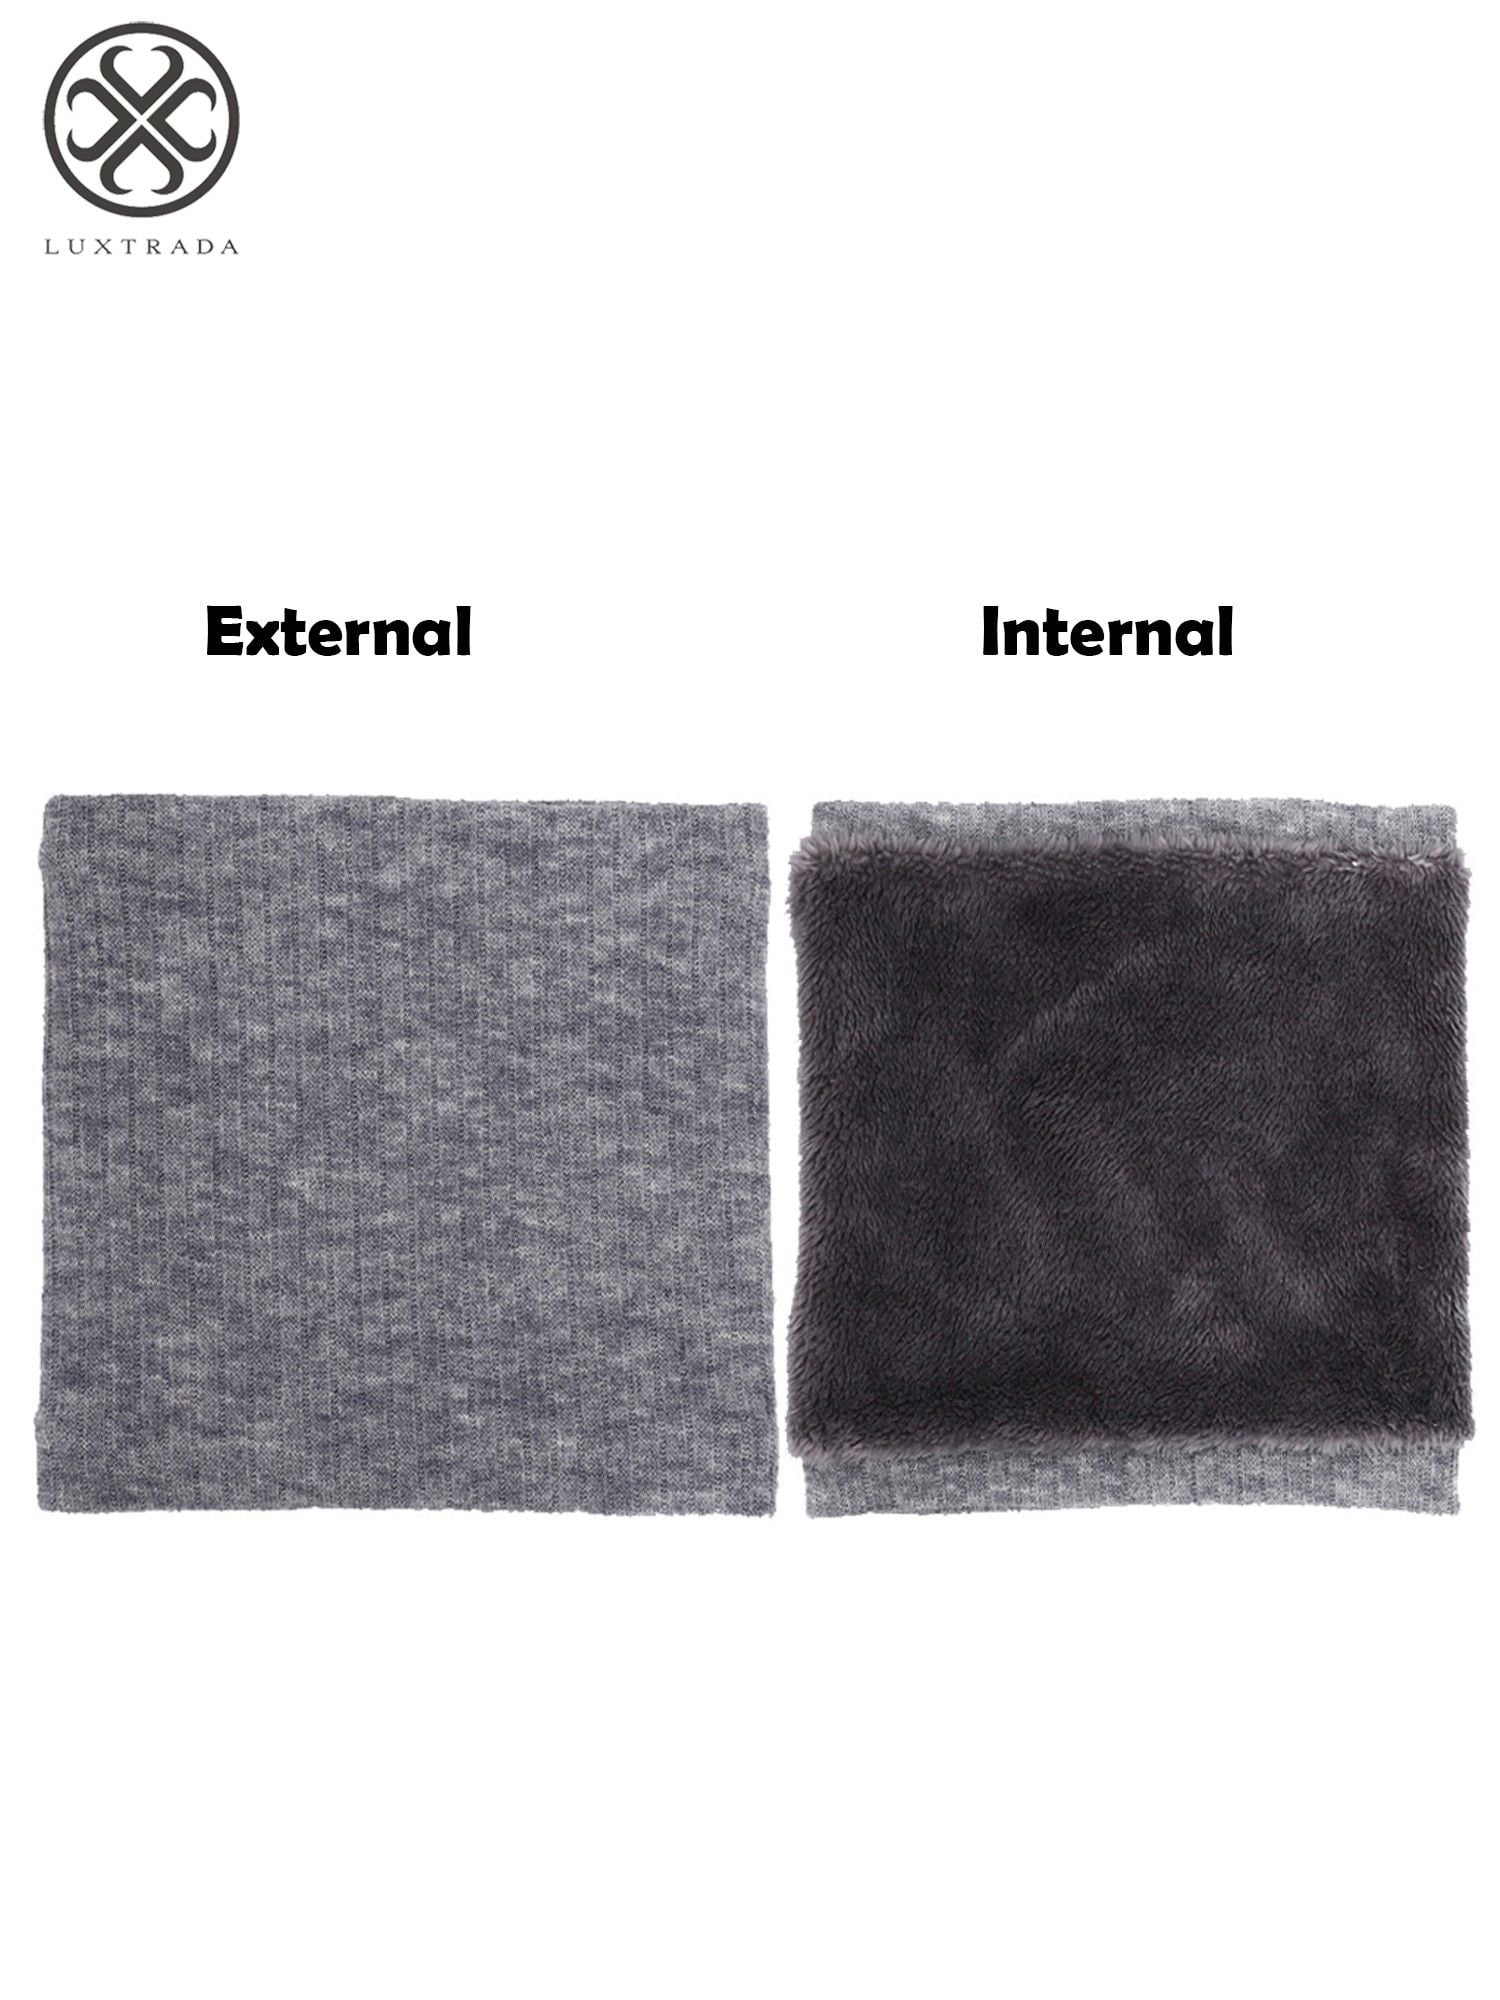 Chalier Infinity Scarf Winter Double-Layer Neck Warmer Knit Fleece